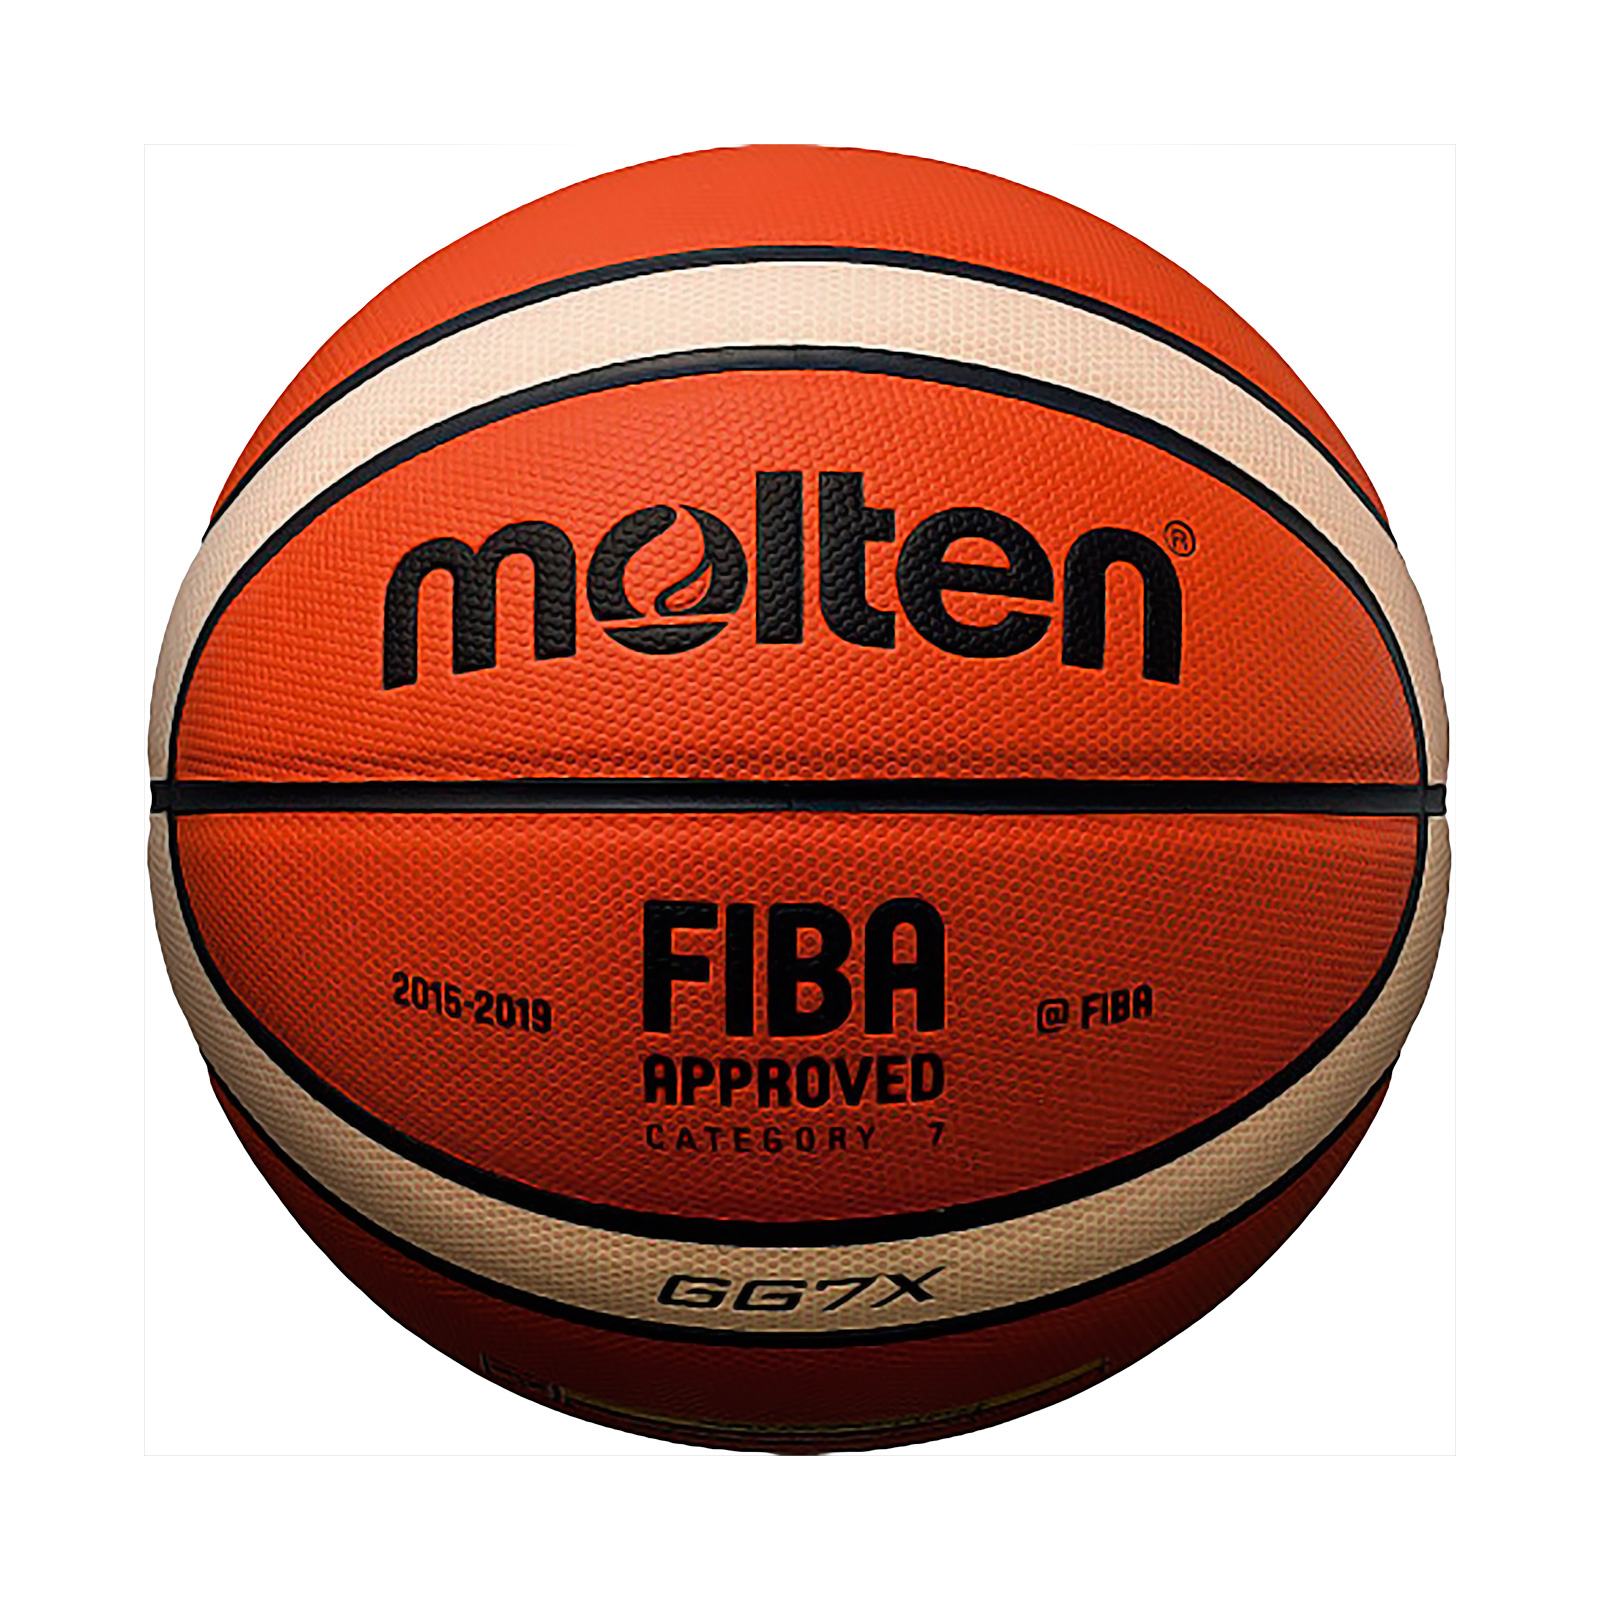 Seminario Incorporar Susurro BALON BALONCESTO 12 PANELES OFICIAL FIBA BGG7X - Dismovel